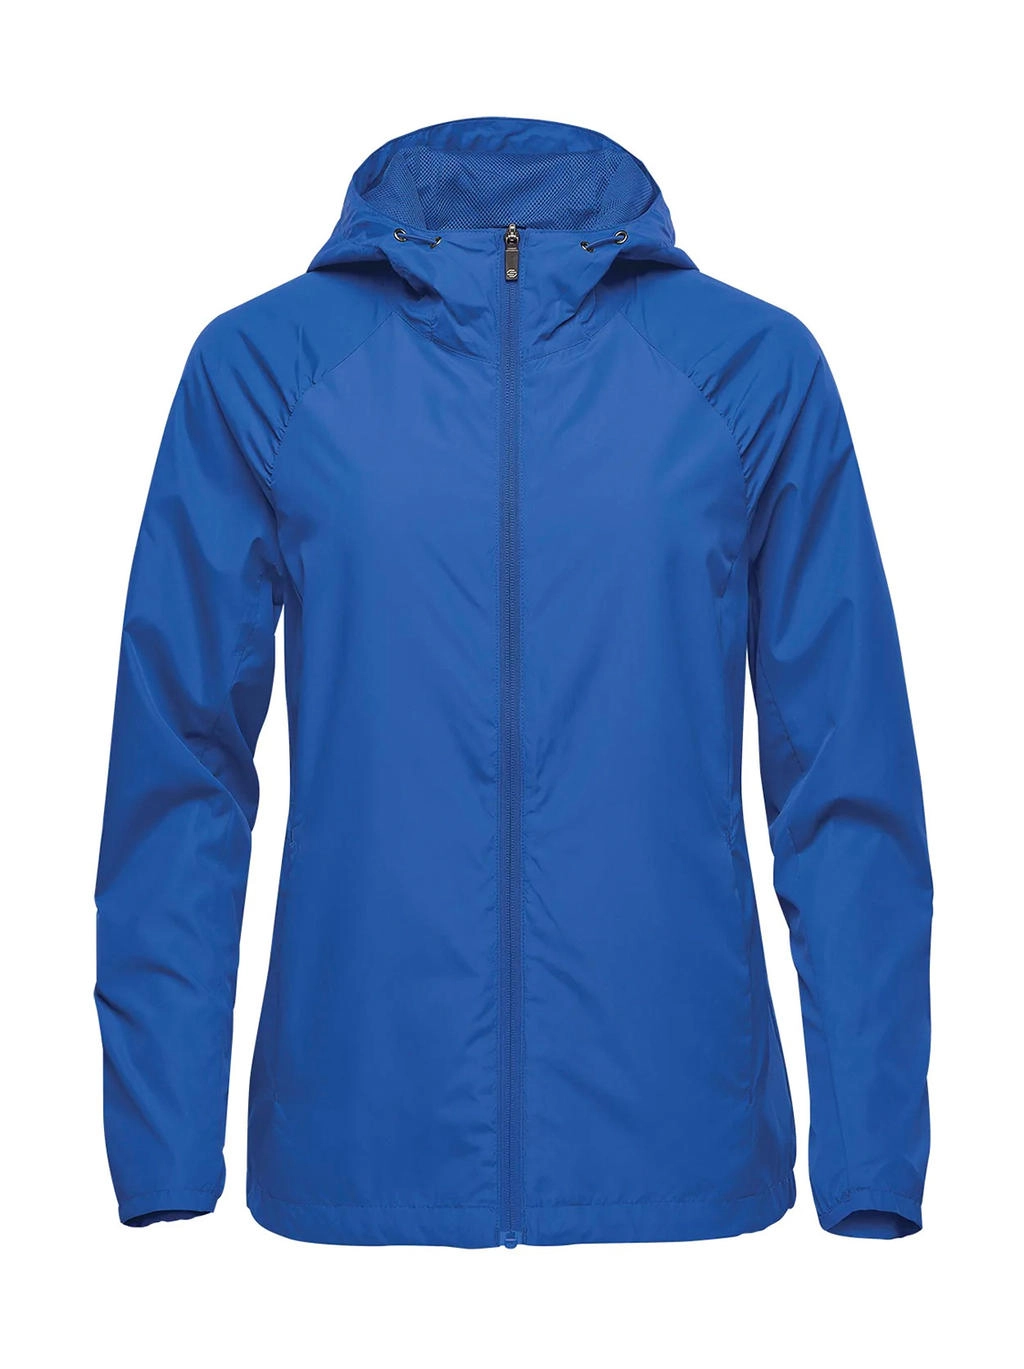 Women`s Wind Jacket zum Besticken und Bedrucken in der Farbe Classic Blue mit Ihren Logo, Schriftzug oder Motiv.